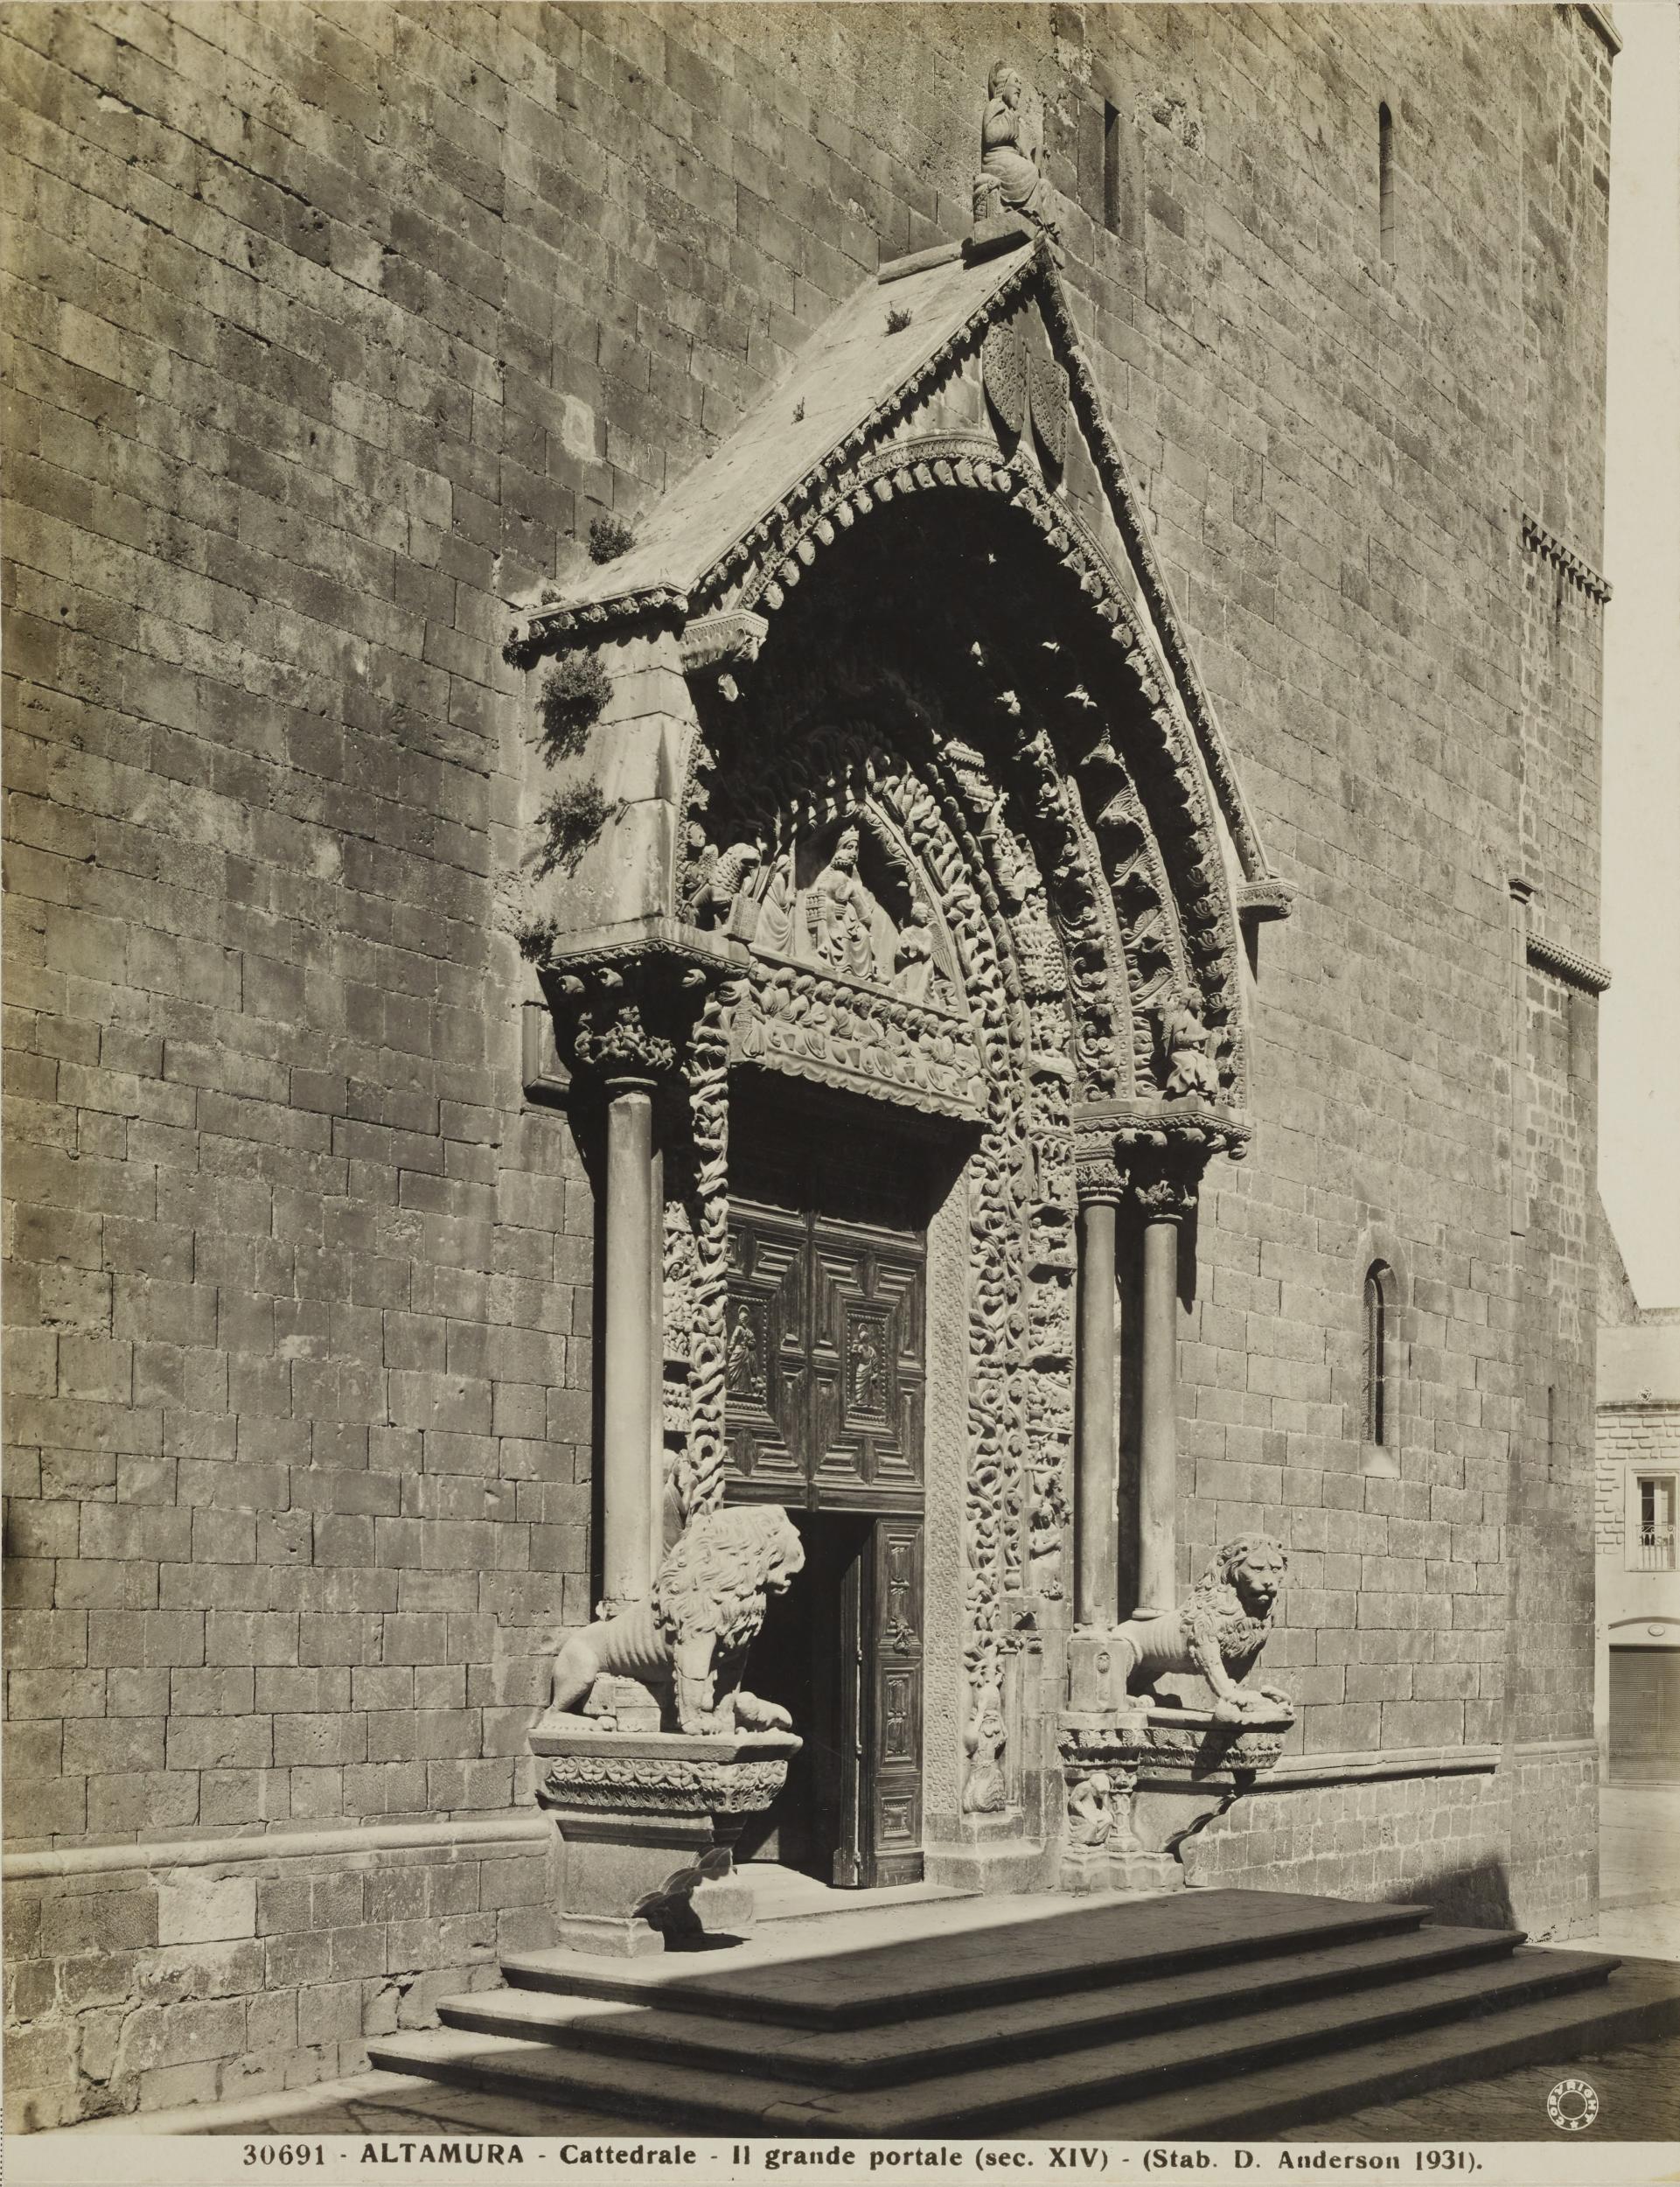 Domenico Anderson, Altamura - Cattedrale di S. Maria Assunta, portale in marmo, 1951-2000, gelatina ai sali d'argento/carta, MPI130826